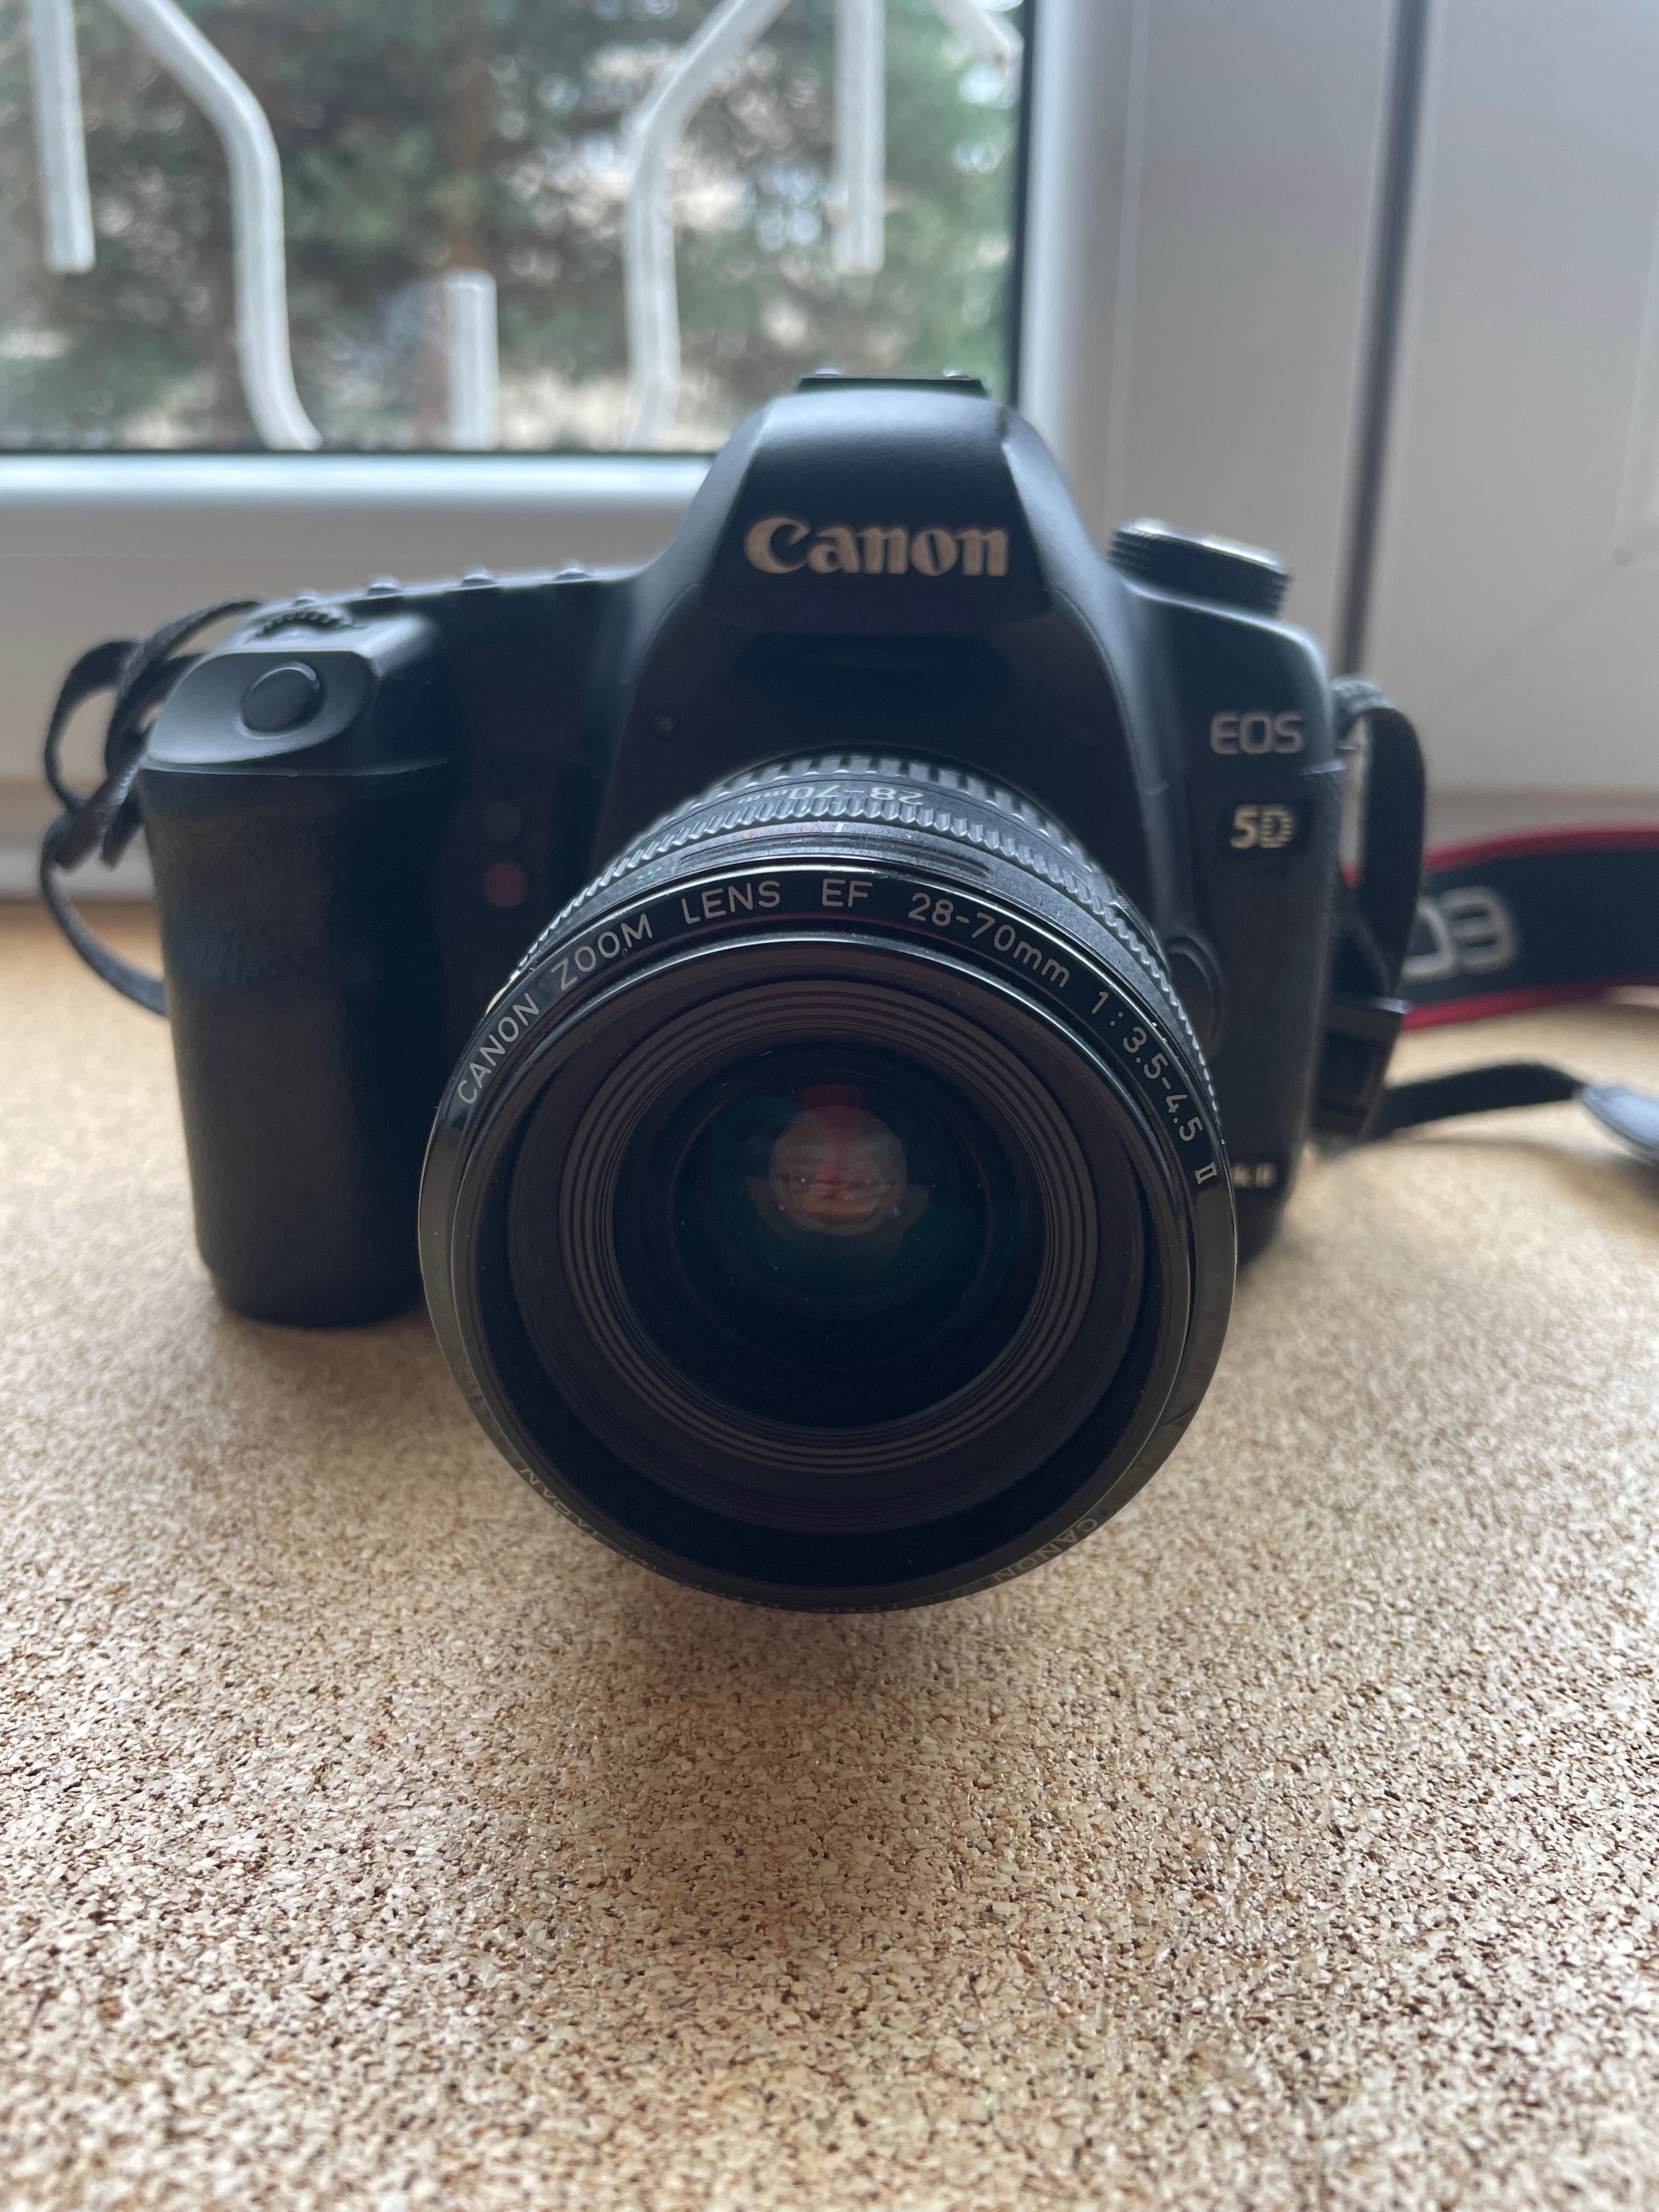 Aparat fotograficzny Canon 5D Mark 2 z obiektywem Canon  EF 28-70mm